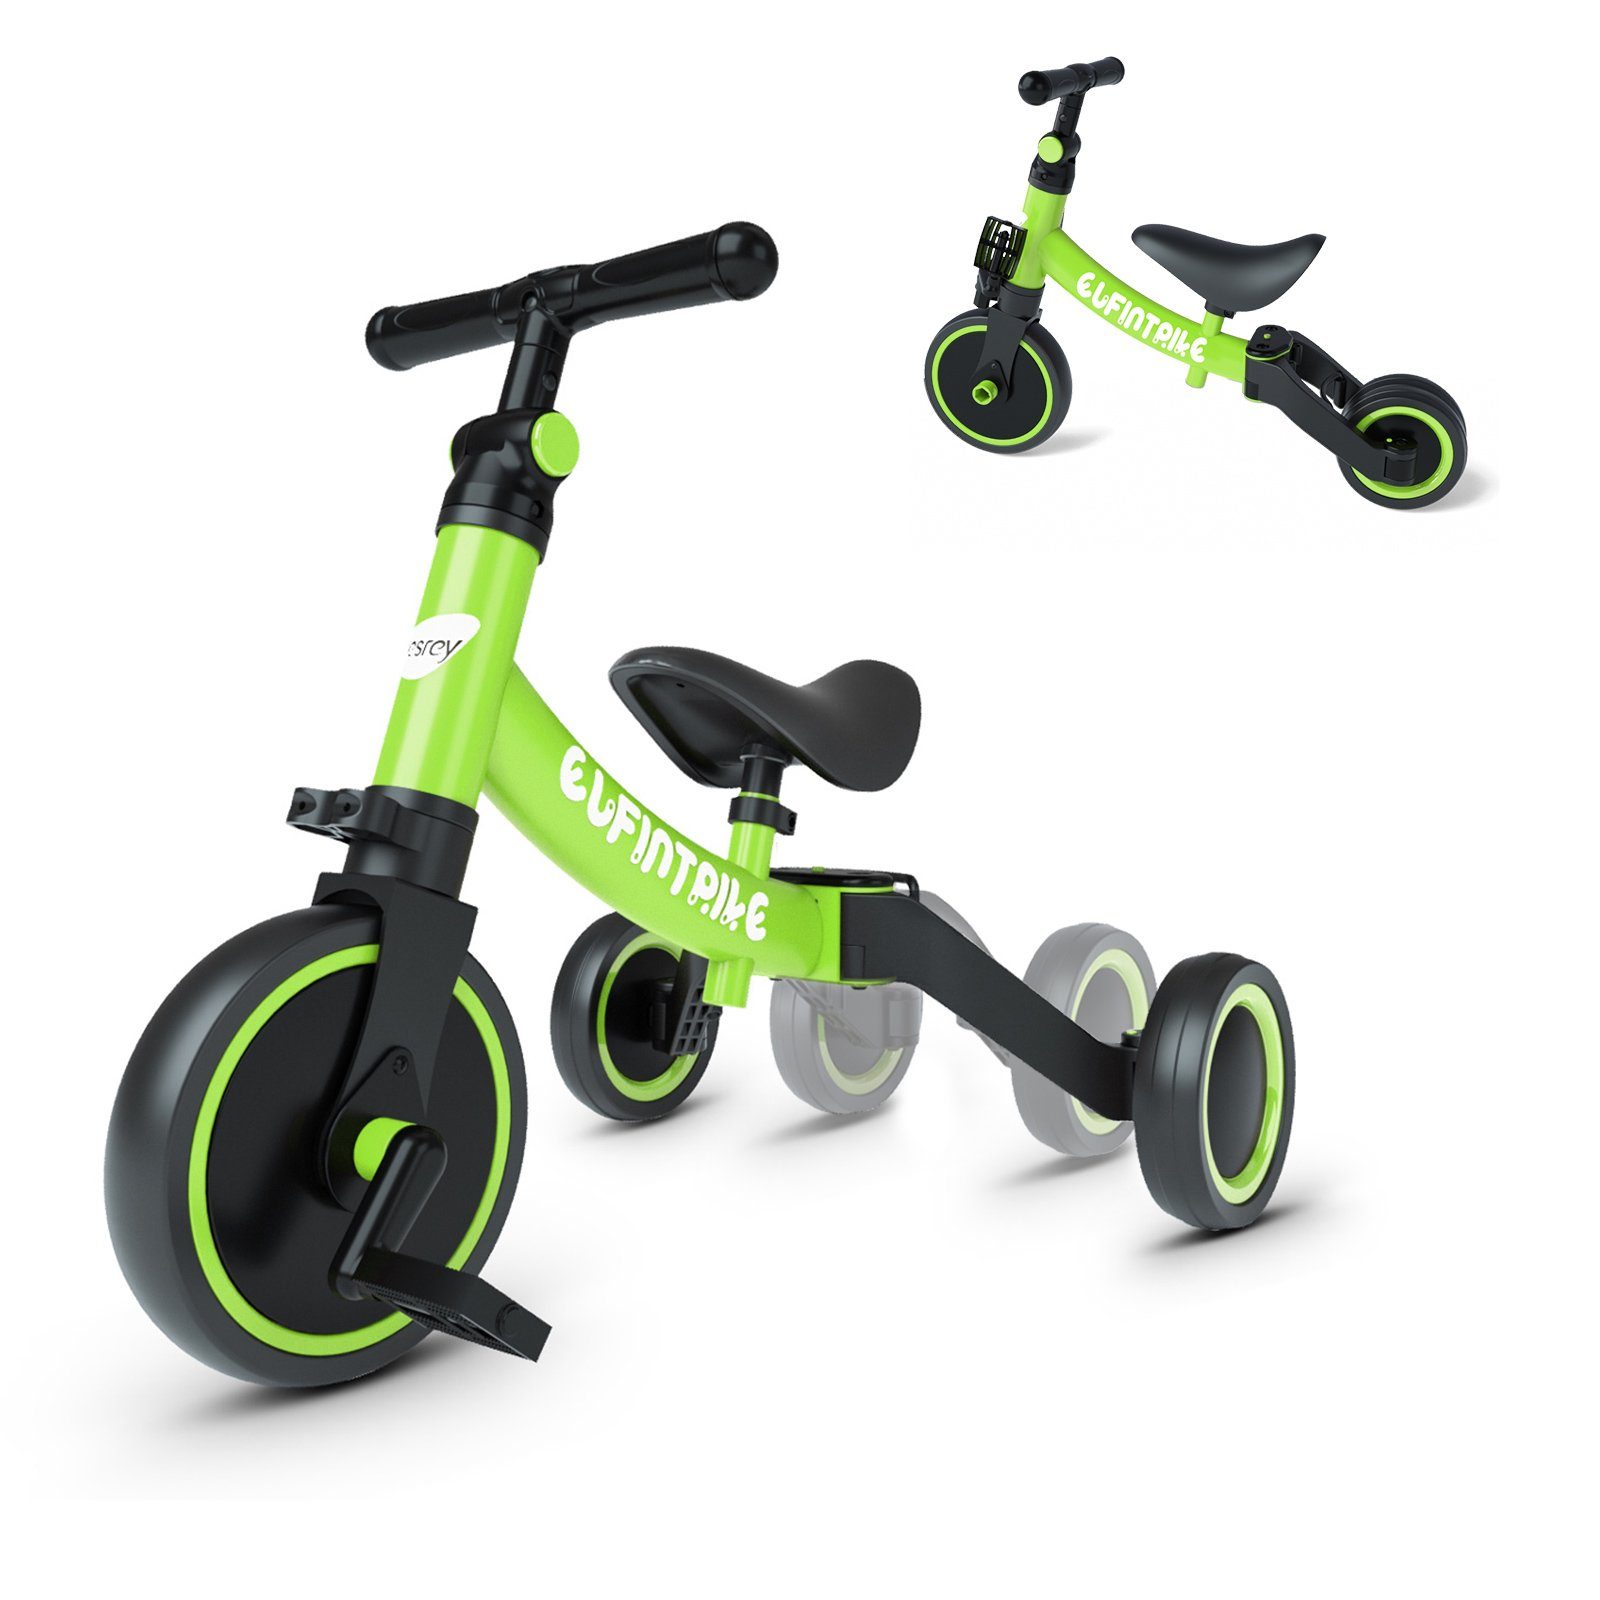 Kinder Laufrad Baby Kinderlaufrad Lauflernrad für Kinder ab 1 Jahr grün 